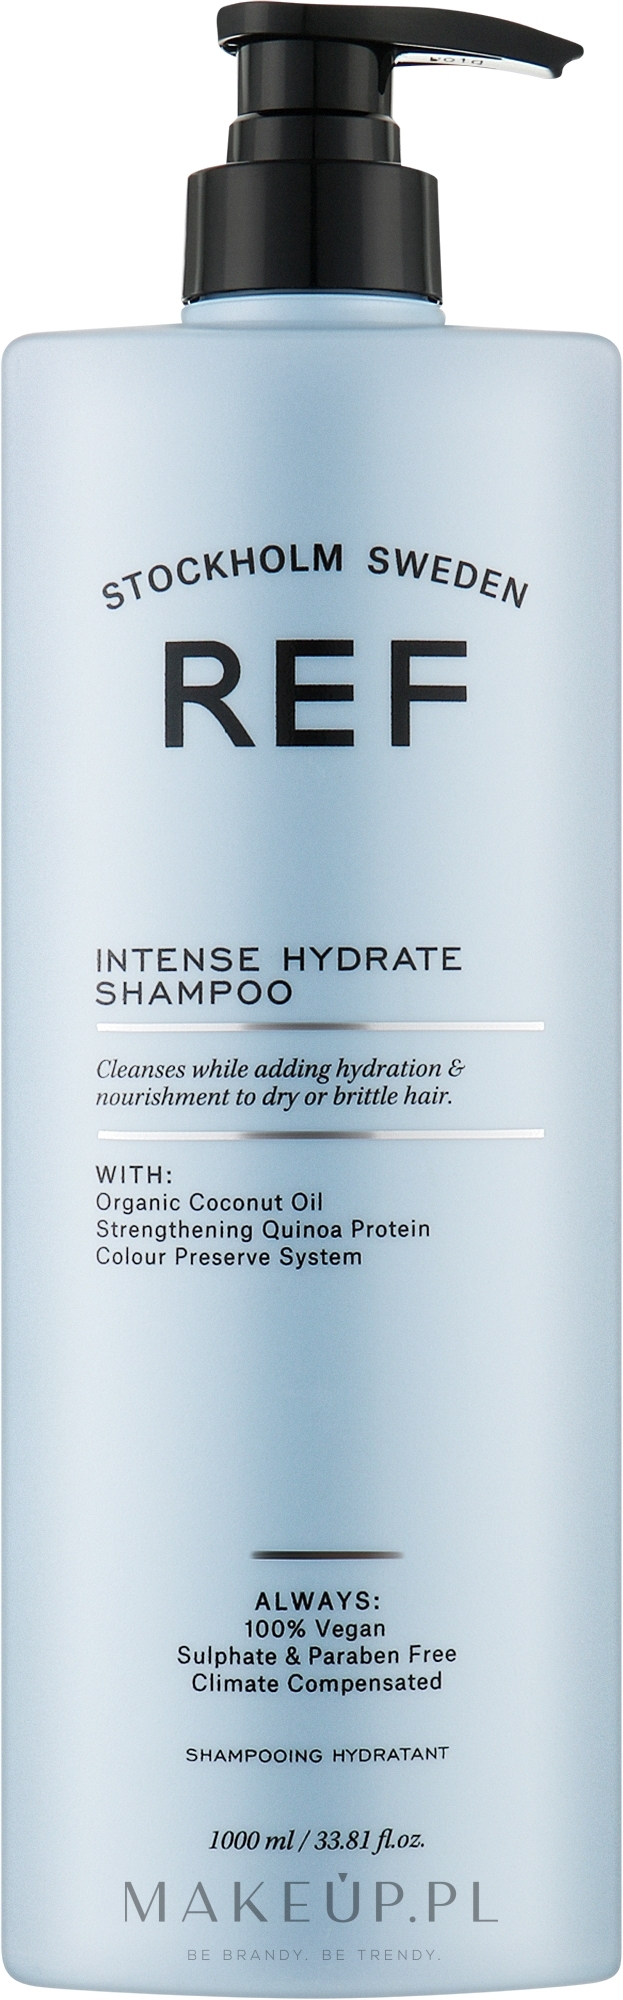 Nawilżający szampon do włosów - REF Intense Hydrate Shampoo — Zdjęcie 1000 ml